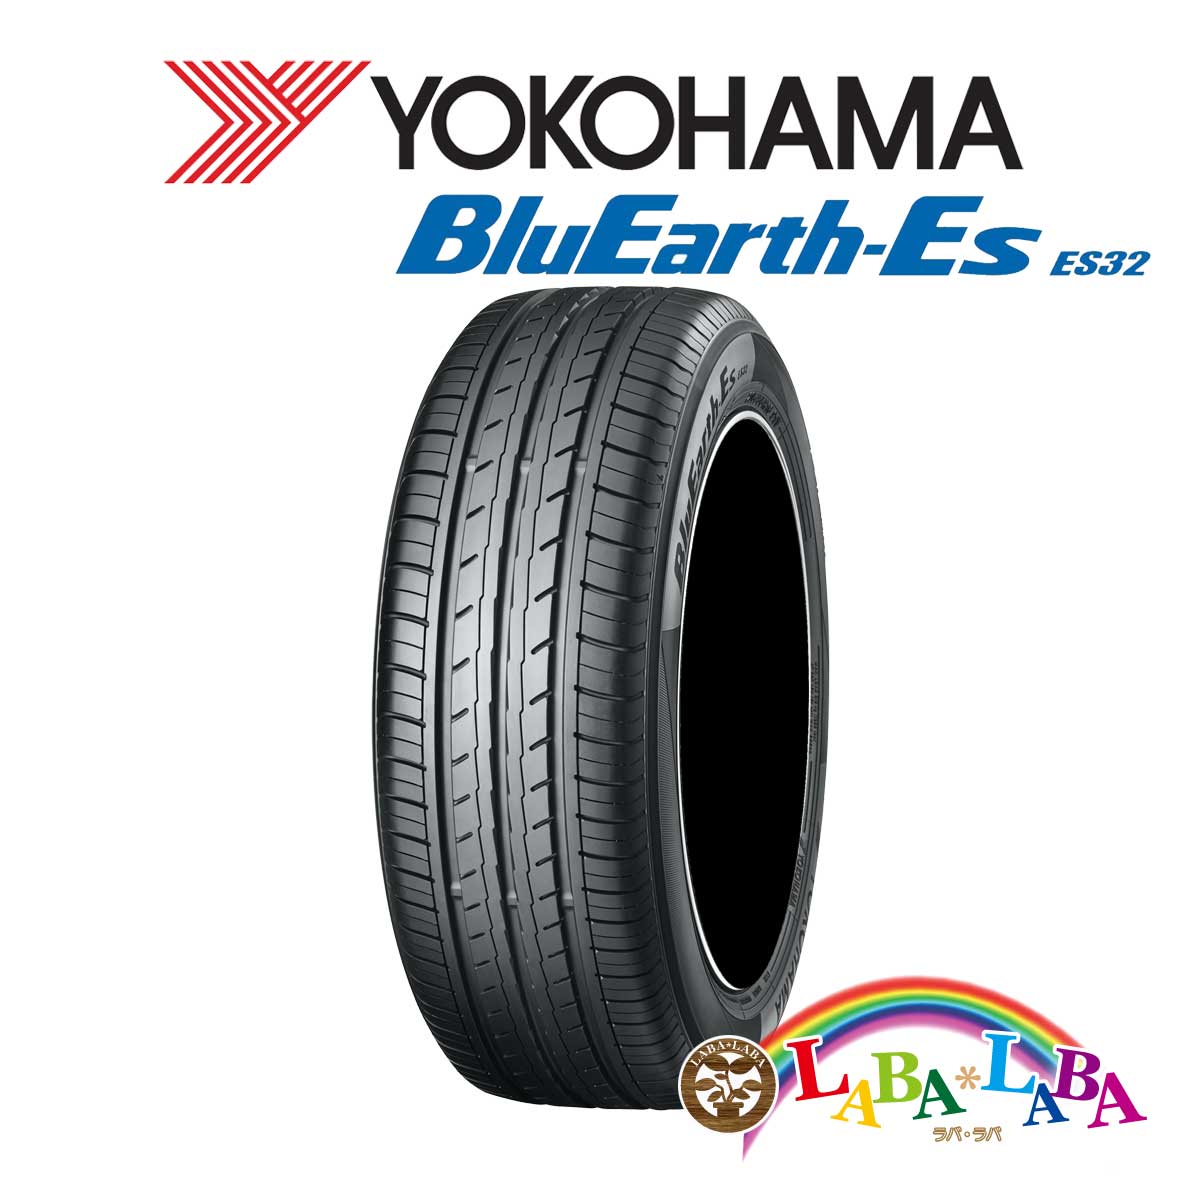 送料無料 国産タイヤ サマータイヤ 新品(タイヤのみ) 4本SET YOKOHAMA ヨコハマ BluEarth-Es ブルーアース ES32 195/50R16 84V サマータイヤ 4本セット